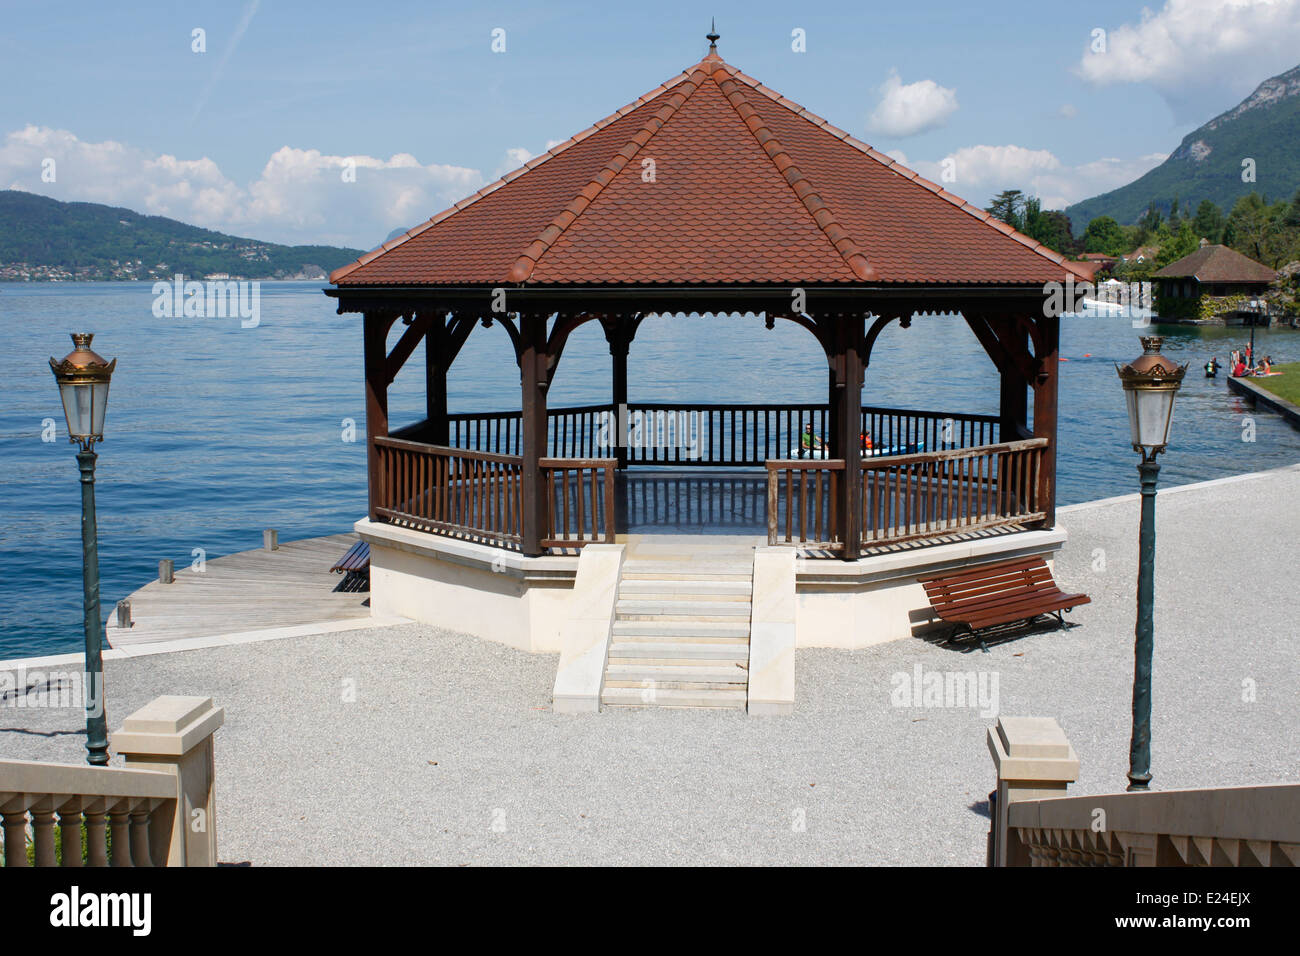 Villaggio di Menthon-Saint-Bernard, il lago di Annecy, Haute-Savoie, Rhône-Alpes, in Francia. Foto Stock